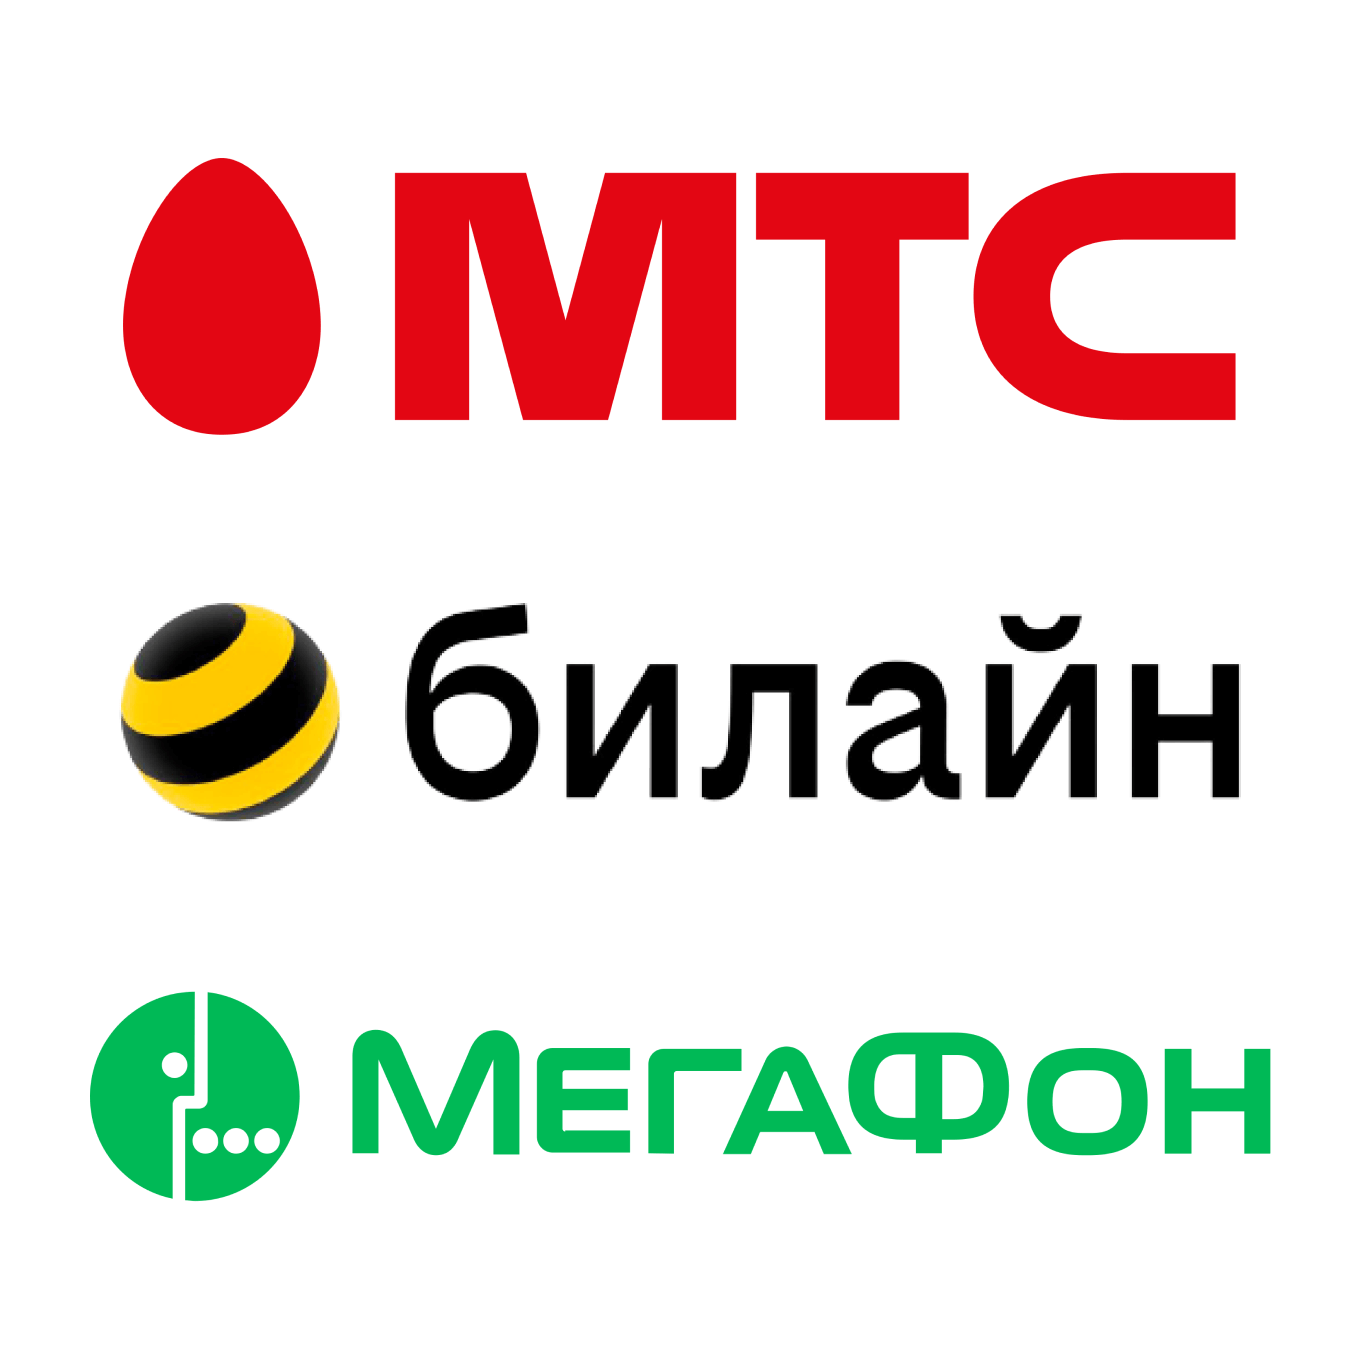 Логотипы федеральных сотовых операторов